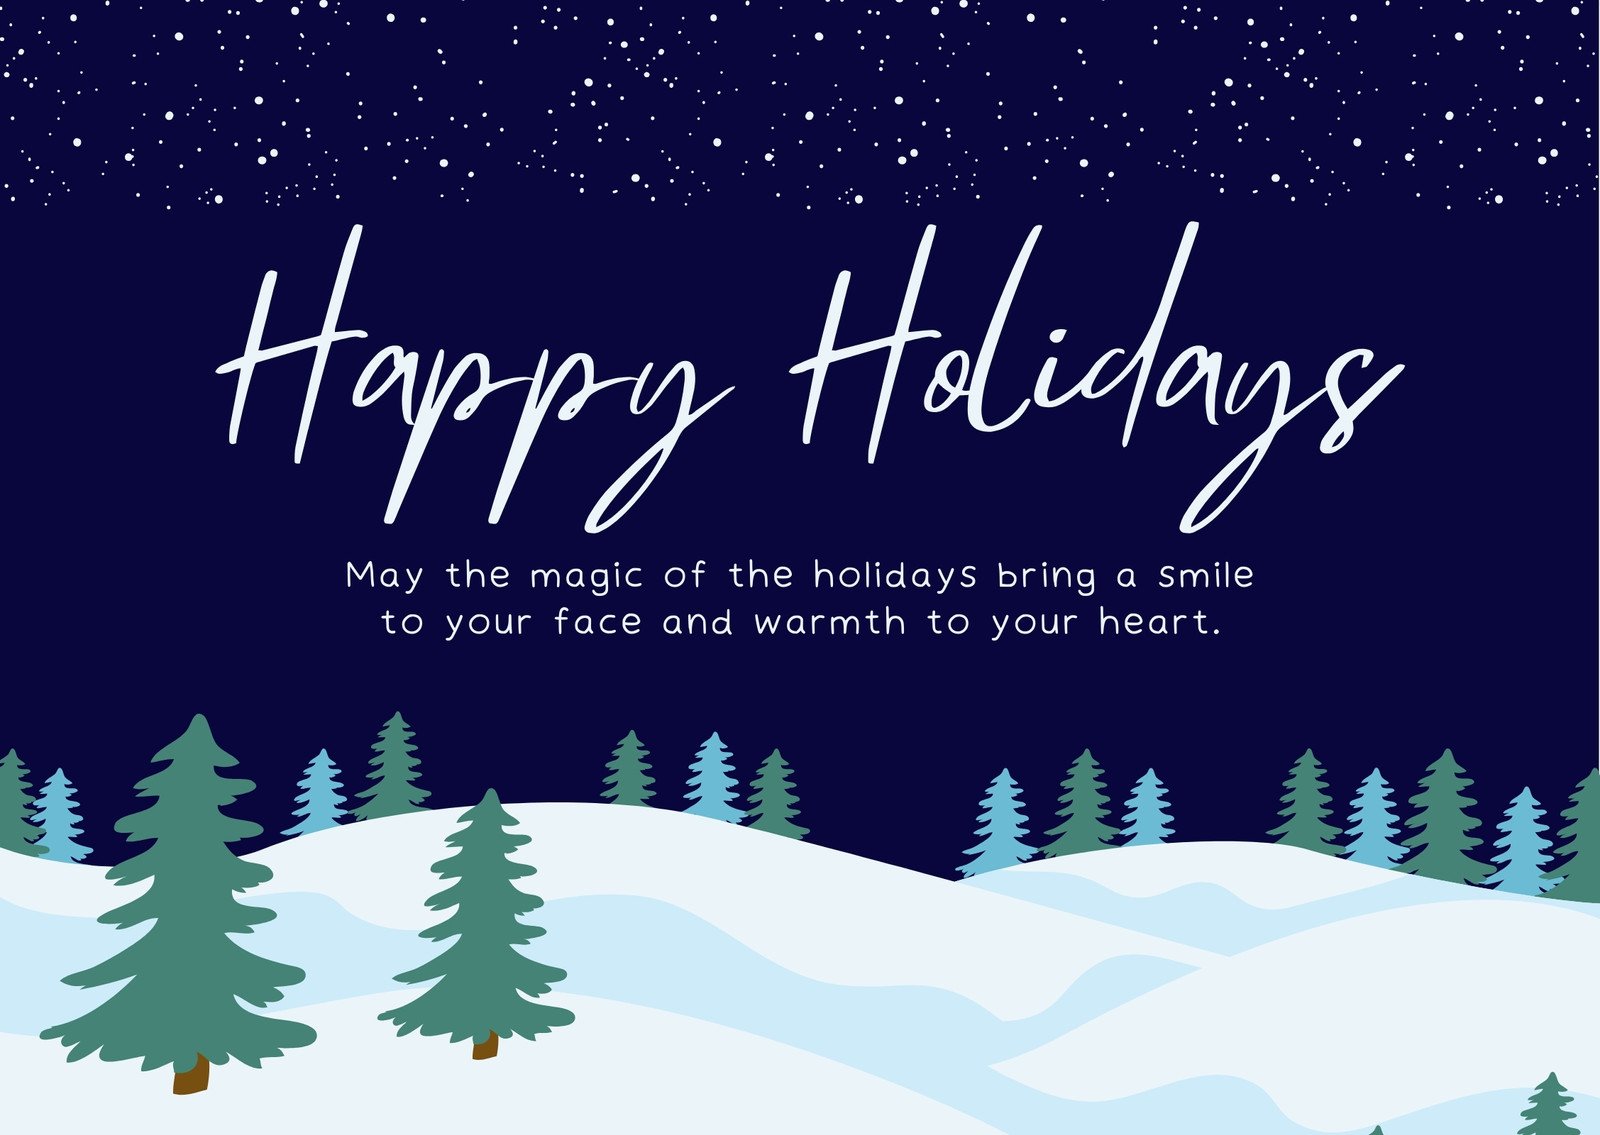 Free and printable holiday postcard templates